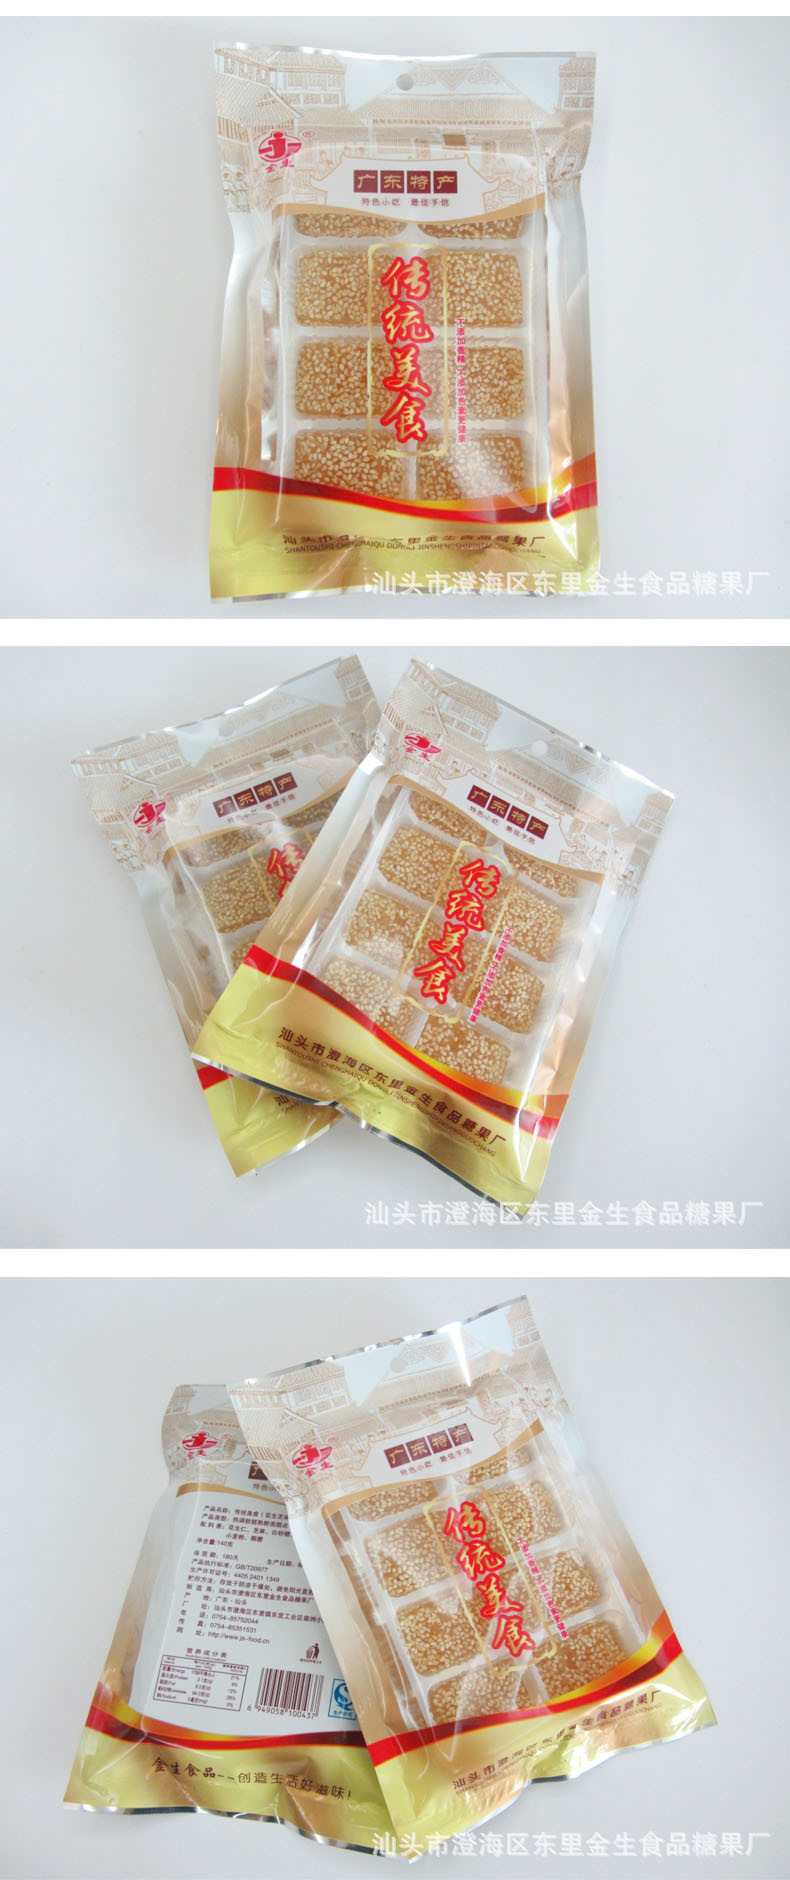 【汕头馆】金生食品 明糖 两袋装 潮汕特产传统美食